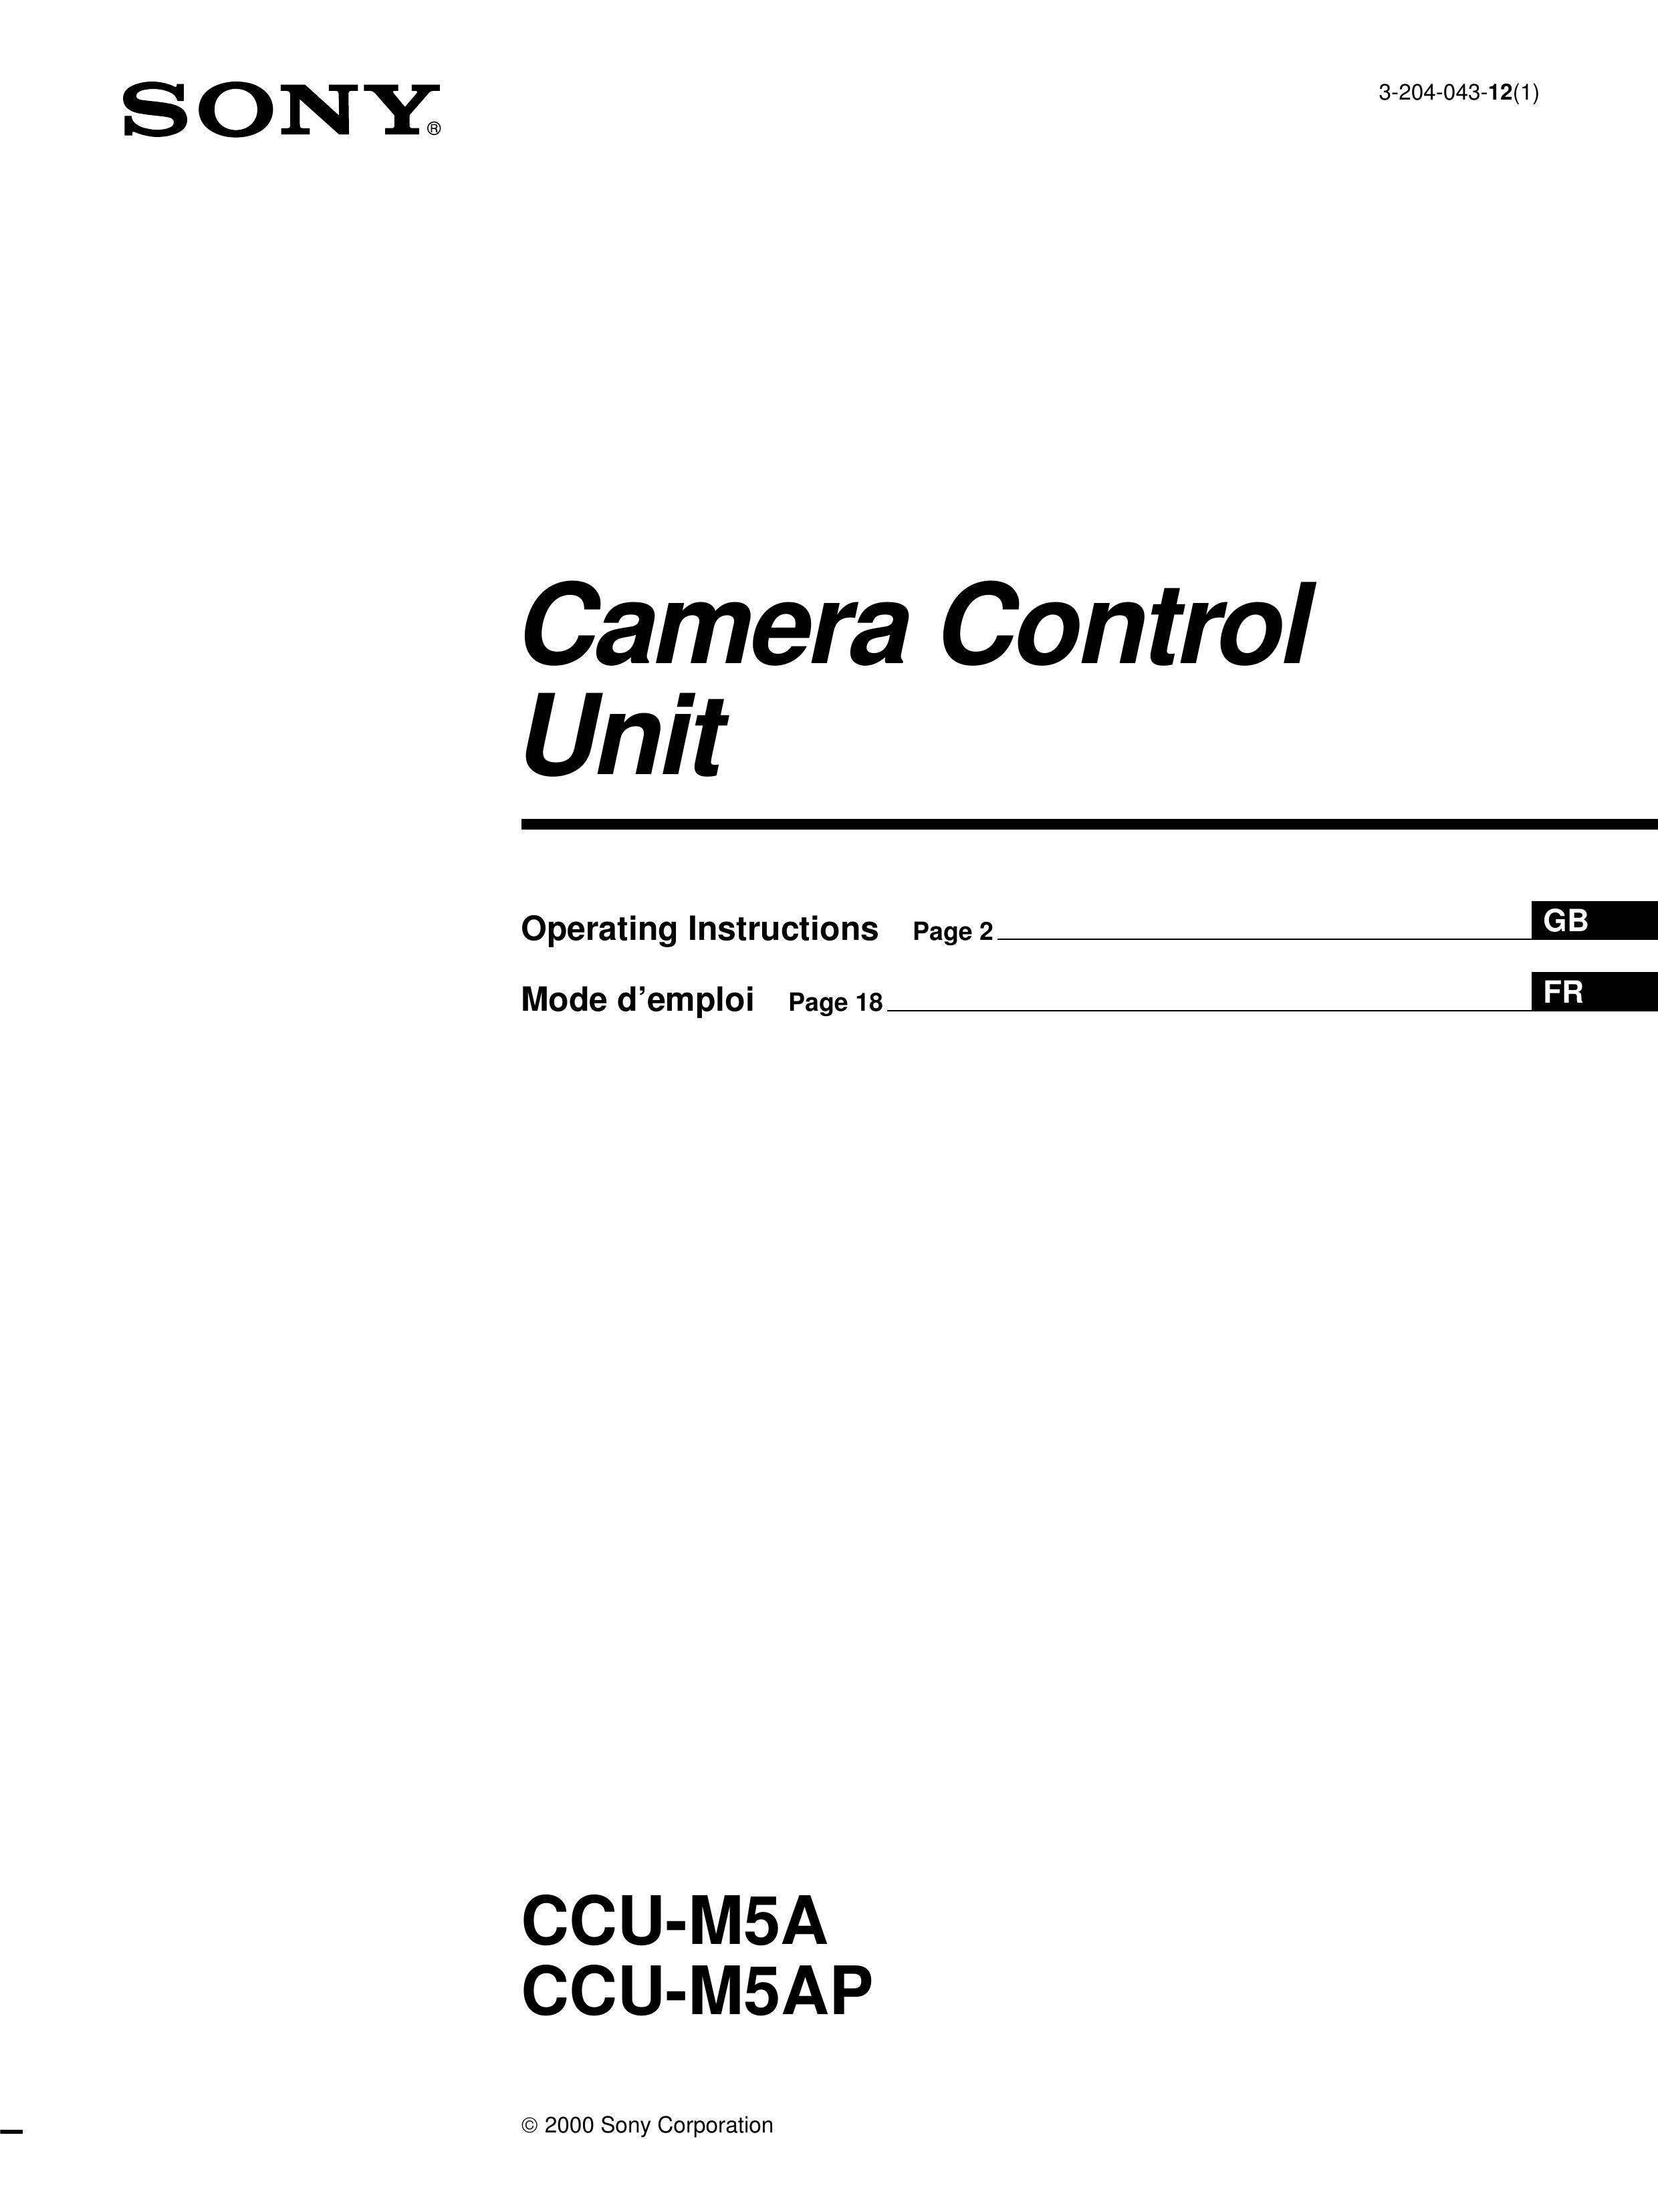 Sony CCU-M5AP Security Camera User Manual